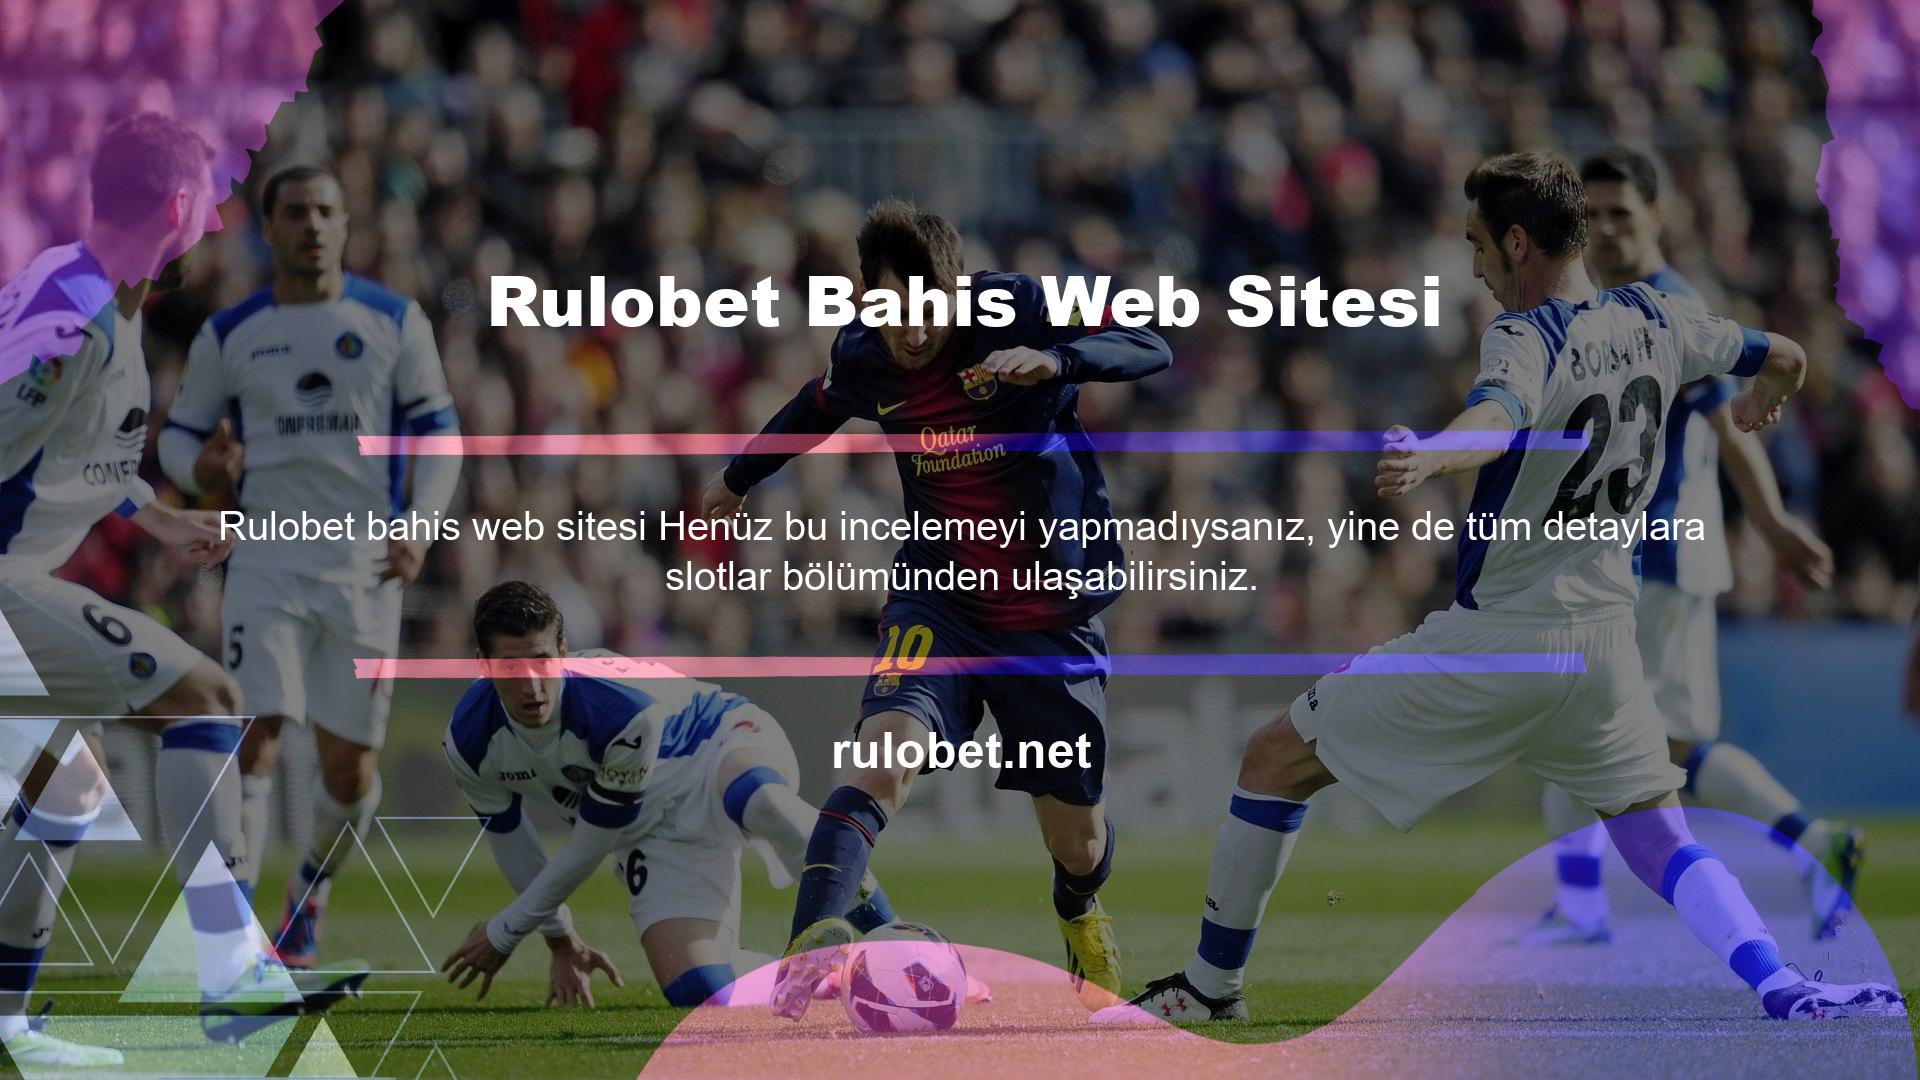 Rulobet Bahis Web Sitesi